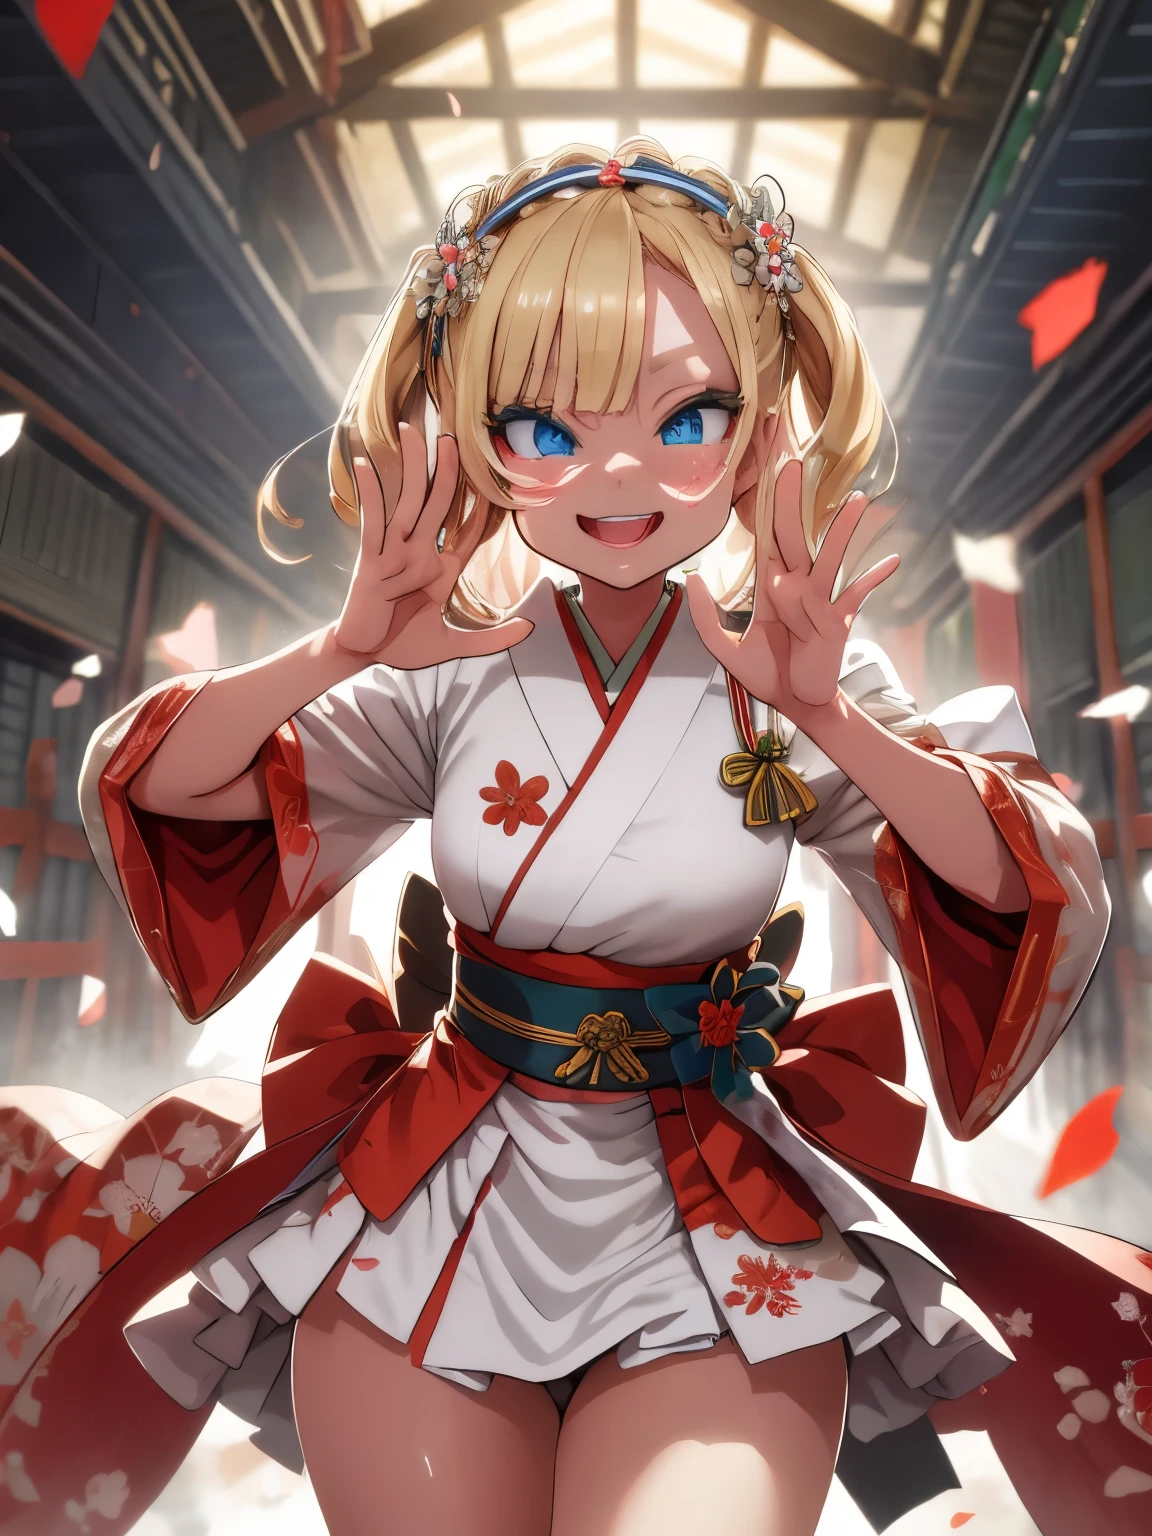 (傑作), (妖精)
表情豊かな目, 笑顔, 姫カット, 勝利のポーズ, 大日本帝国 日本